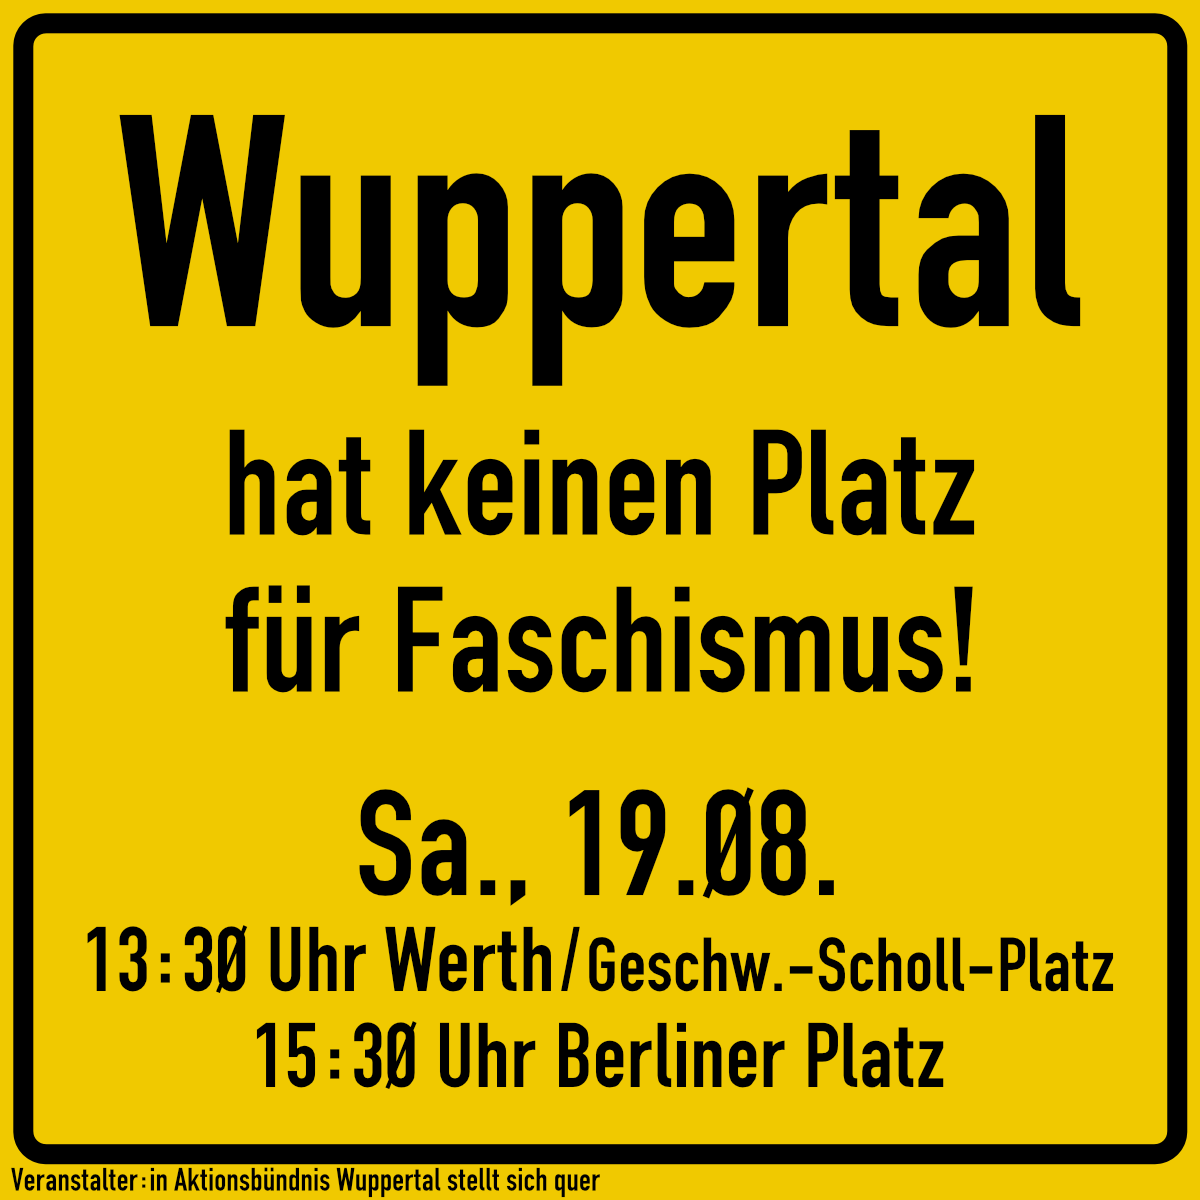 Wuppertal hat keinen Platz für Faschisten